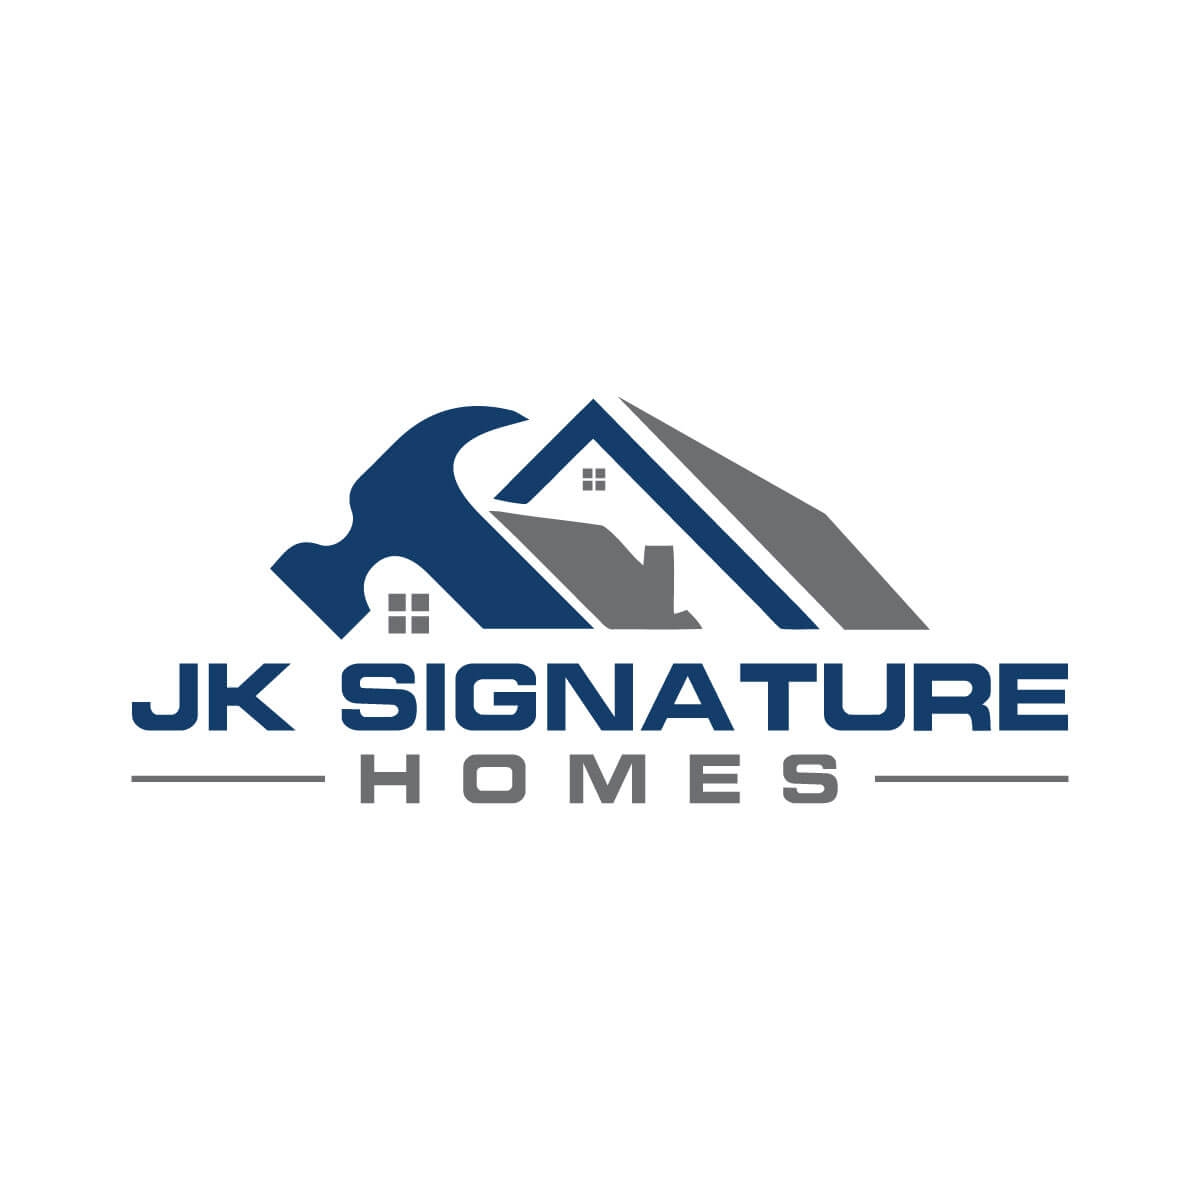 JK Signature Homes